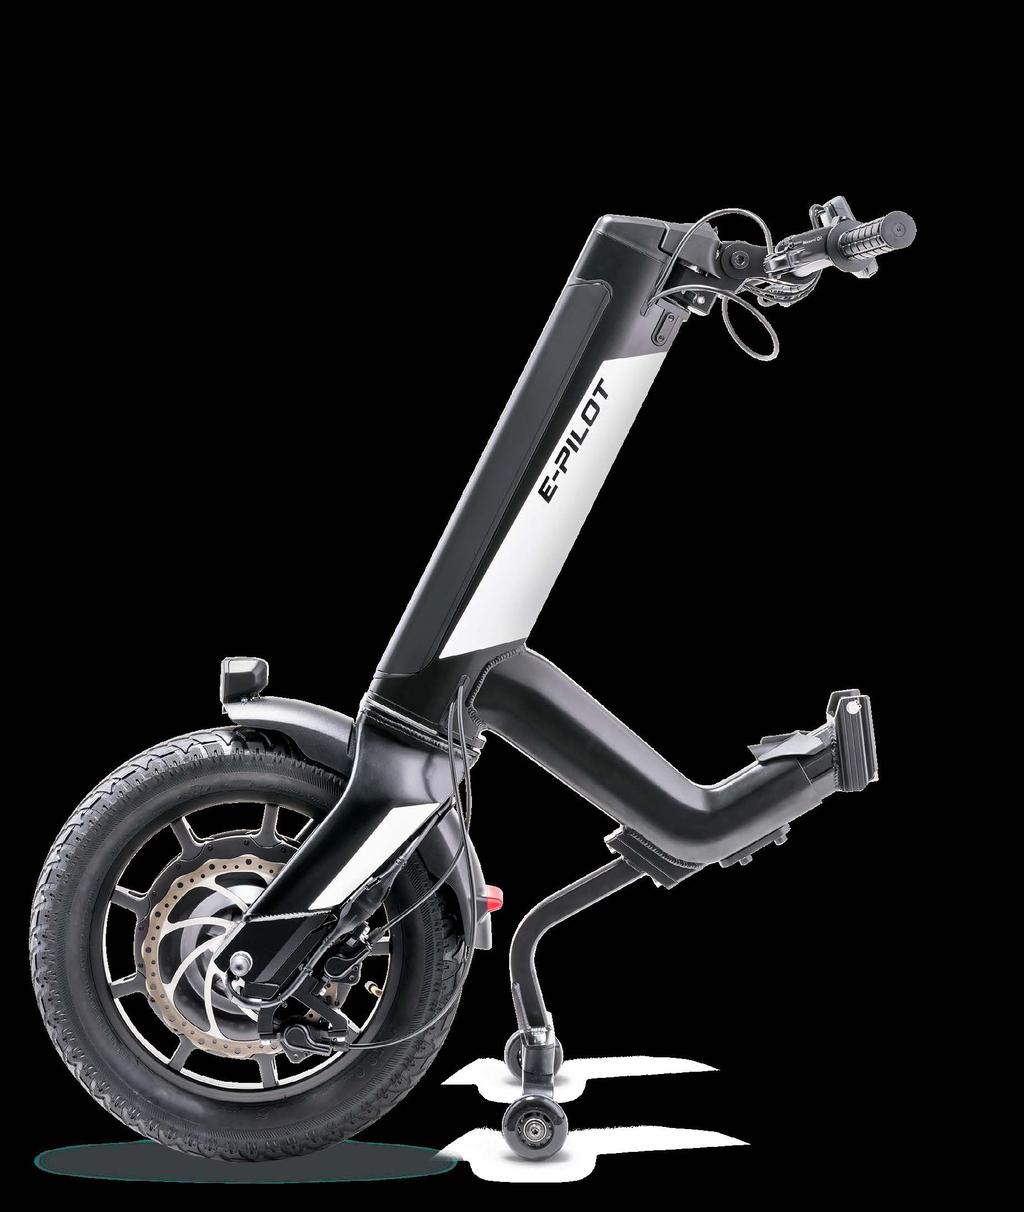 ERVAAR HET DESIGN De eerste indruk is overtuigend. De nieuwe e-pilot elektrische aankoppelbike maakt uw rolstoel binnen enkele seconden een sportief voertuig.